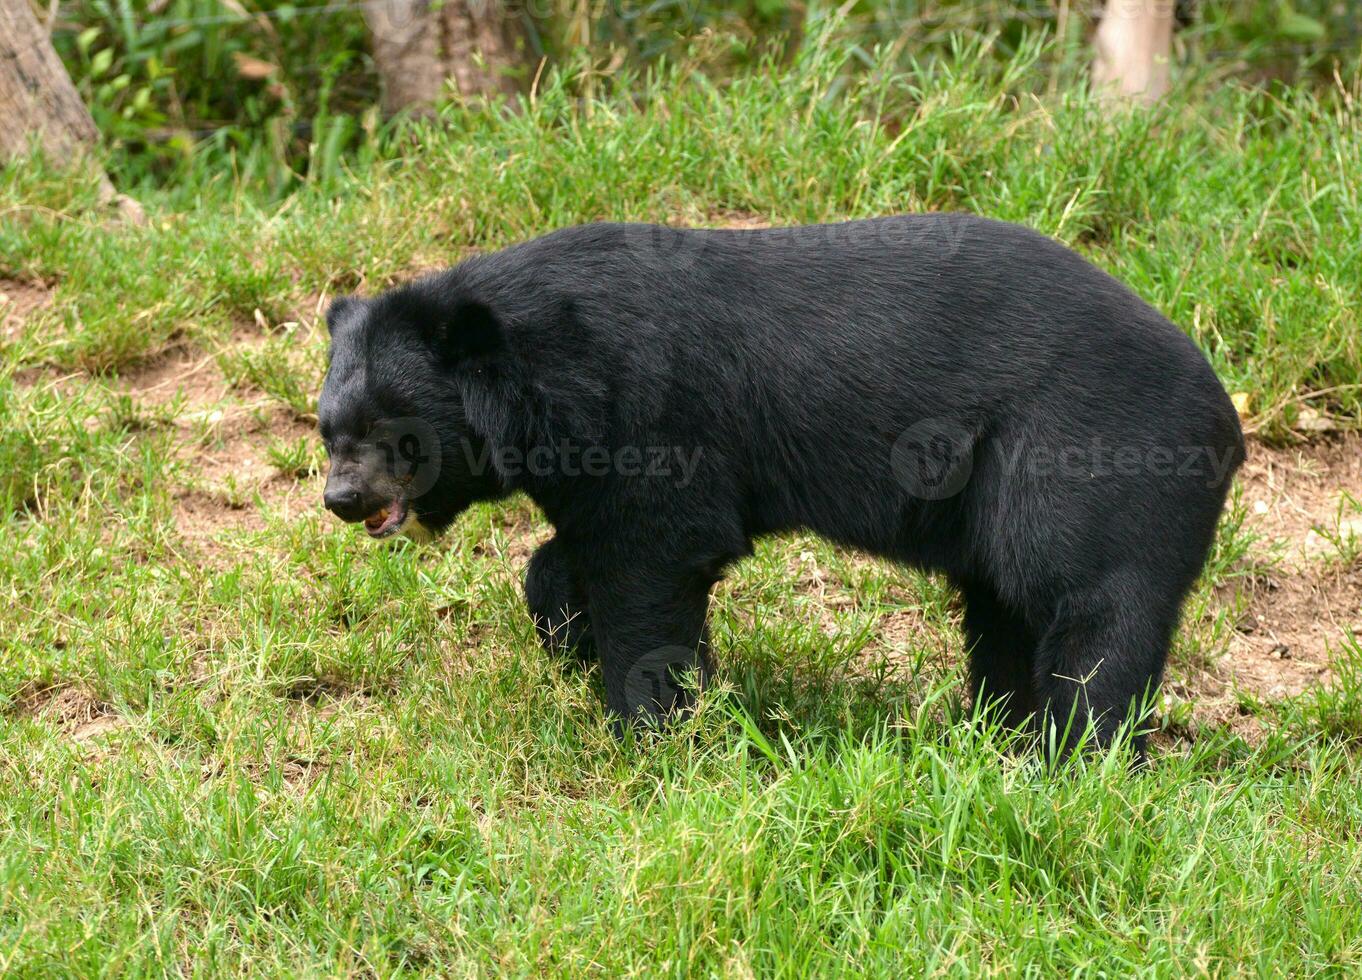 ours noir asiatique photo